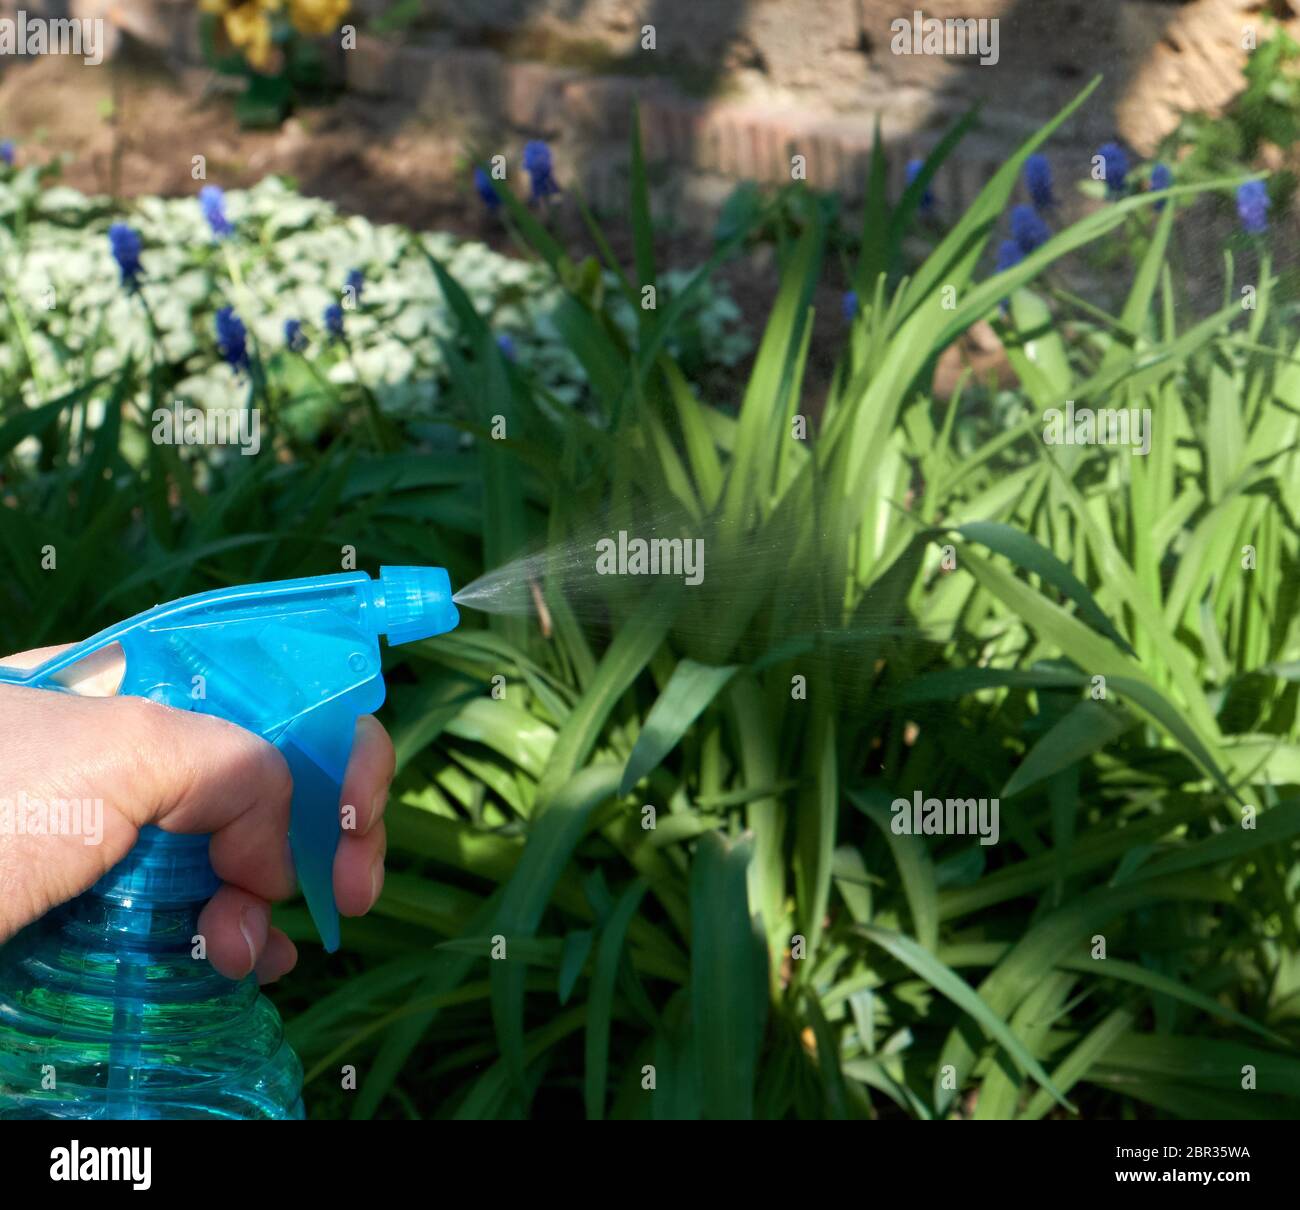 Femmina lato tenendo un blu bottiglia in plastica con liquidi e impianti di spruzzatura con prodotti chimici per uccidere insetti e parassiti, giornata di primavera Foto Stock